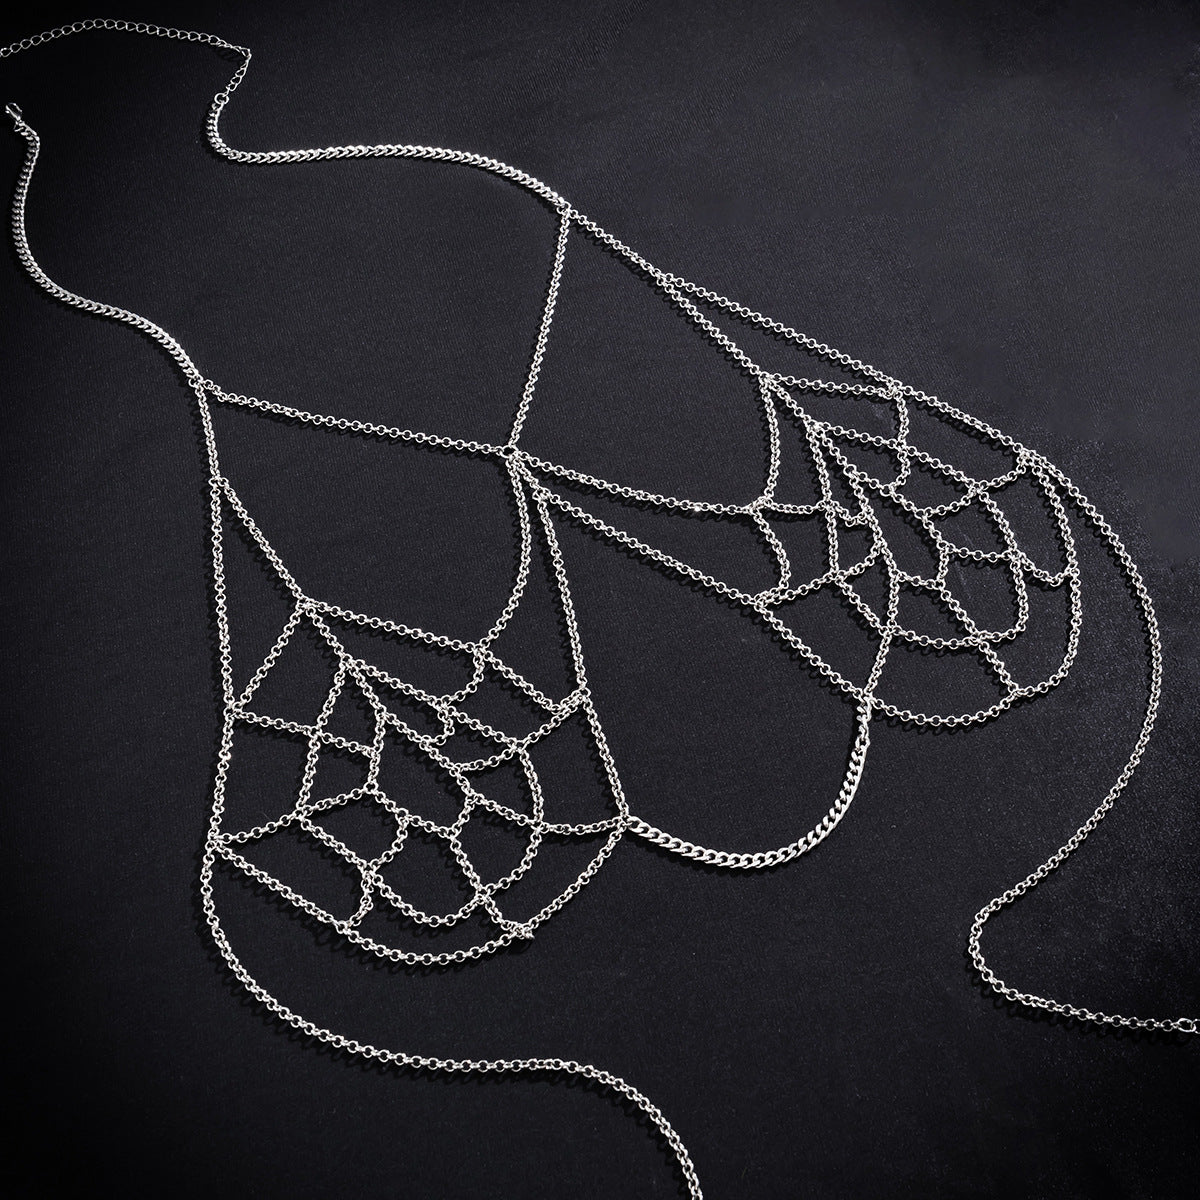 Gothic Halloween Spider Web Body Chain Necklace - Vienna Verve Collection